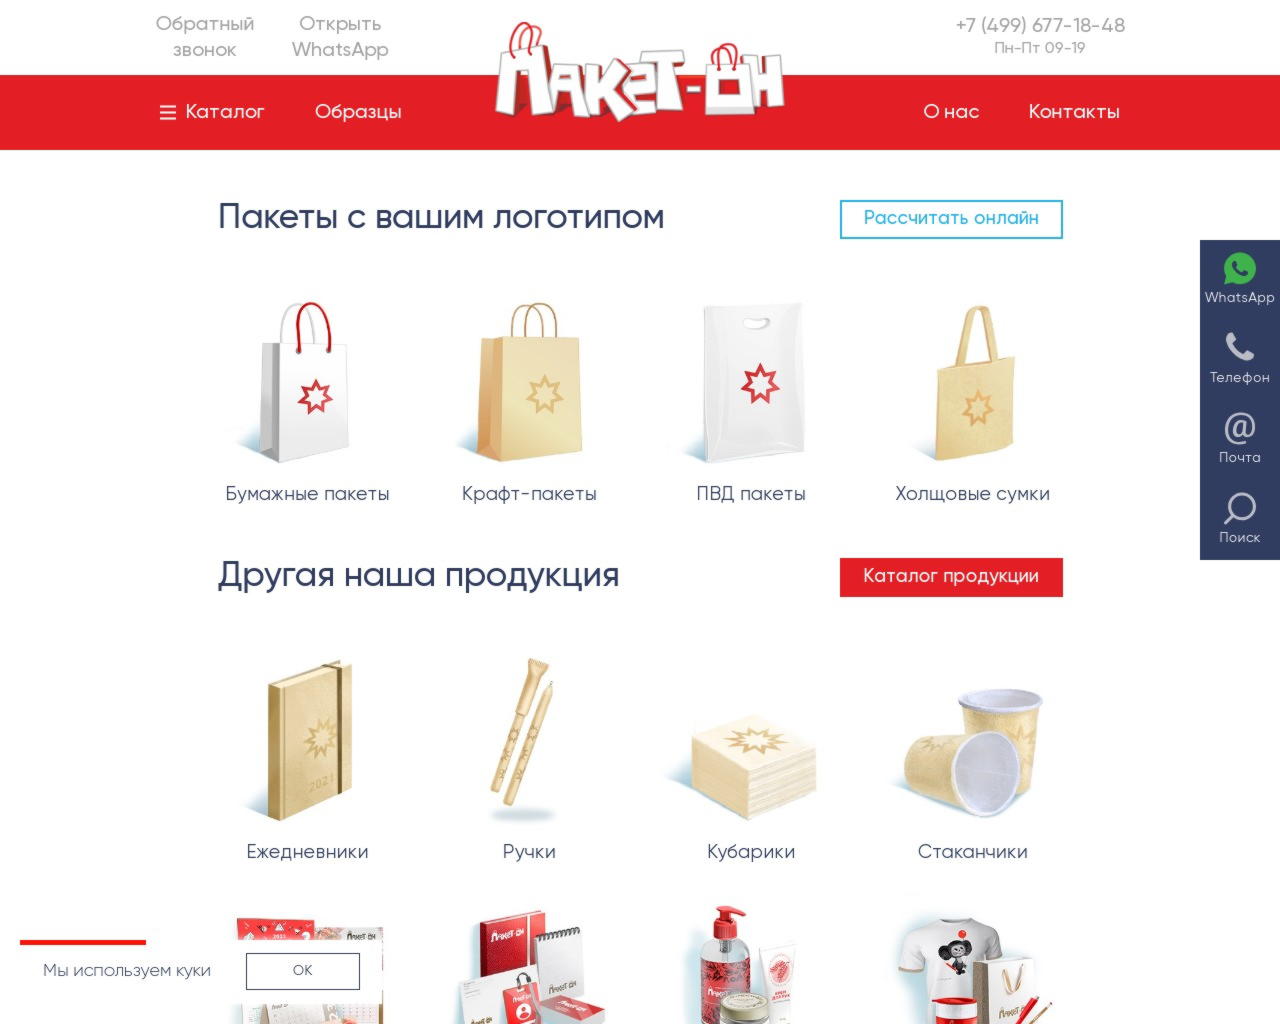 Изображение скриншота сайта - Изготовление бумажных пакетов в Москве дешево и качественно